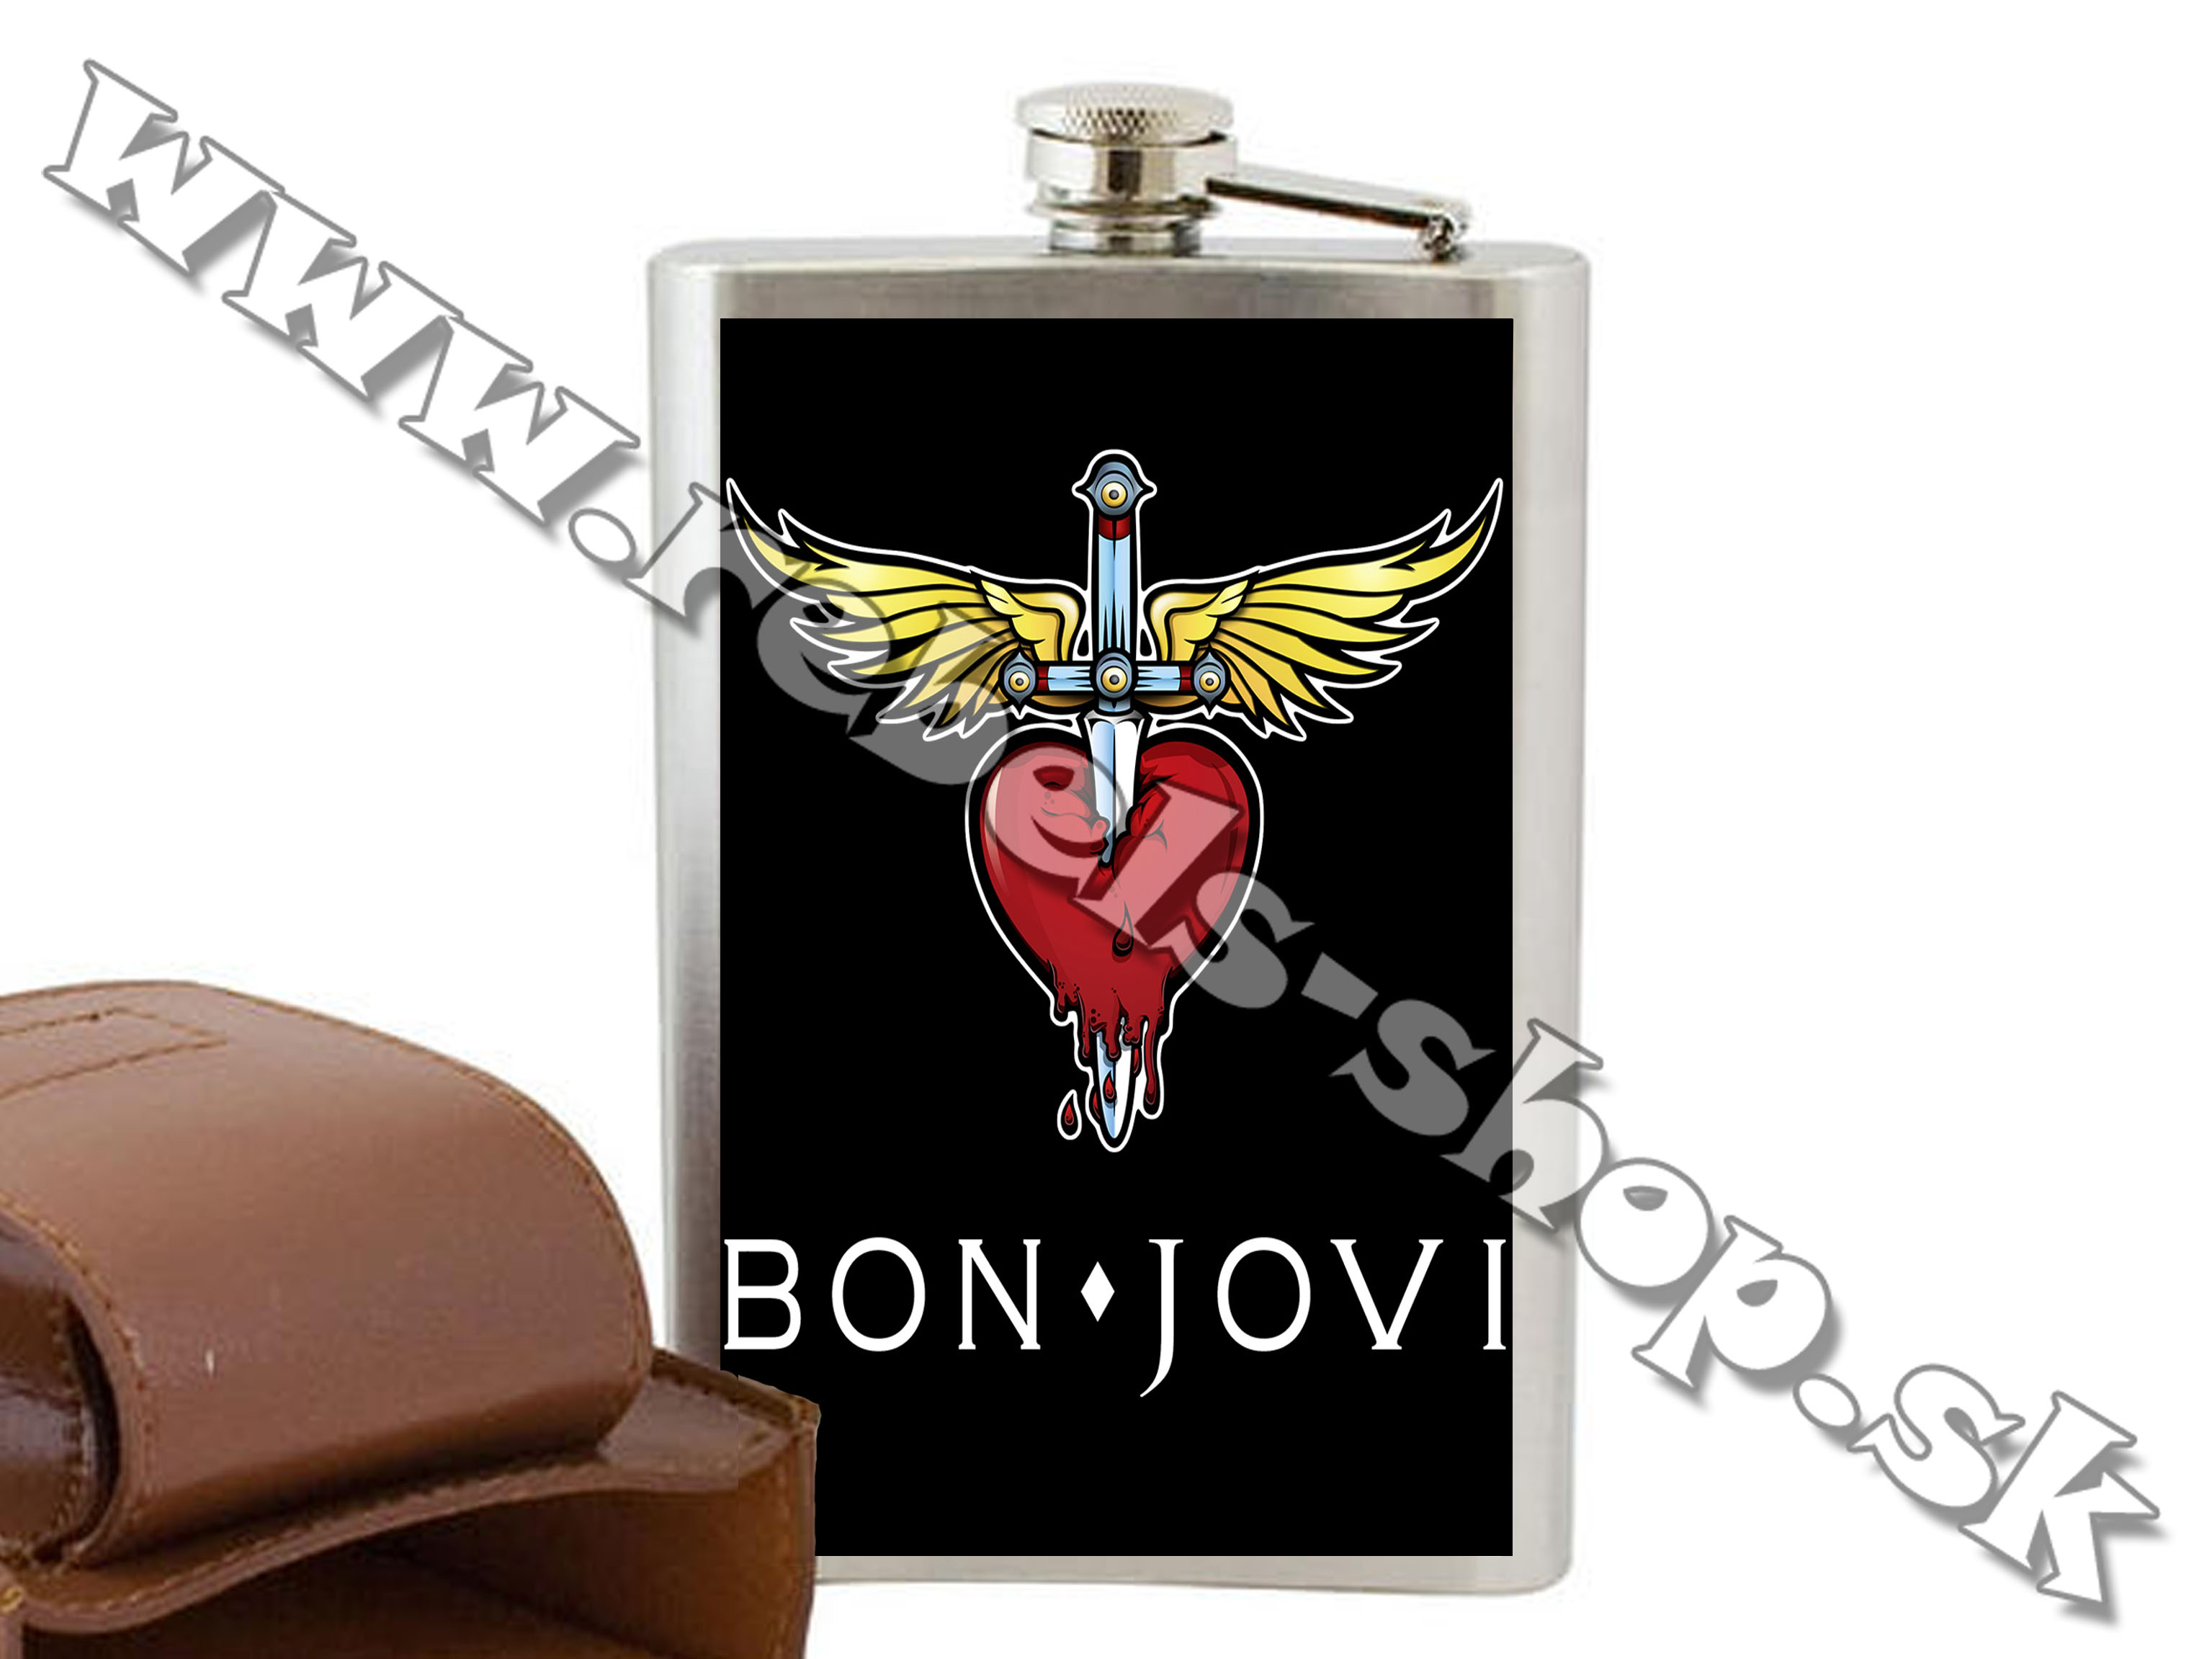 Ploskačka "Bon Jovi"